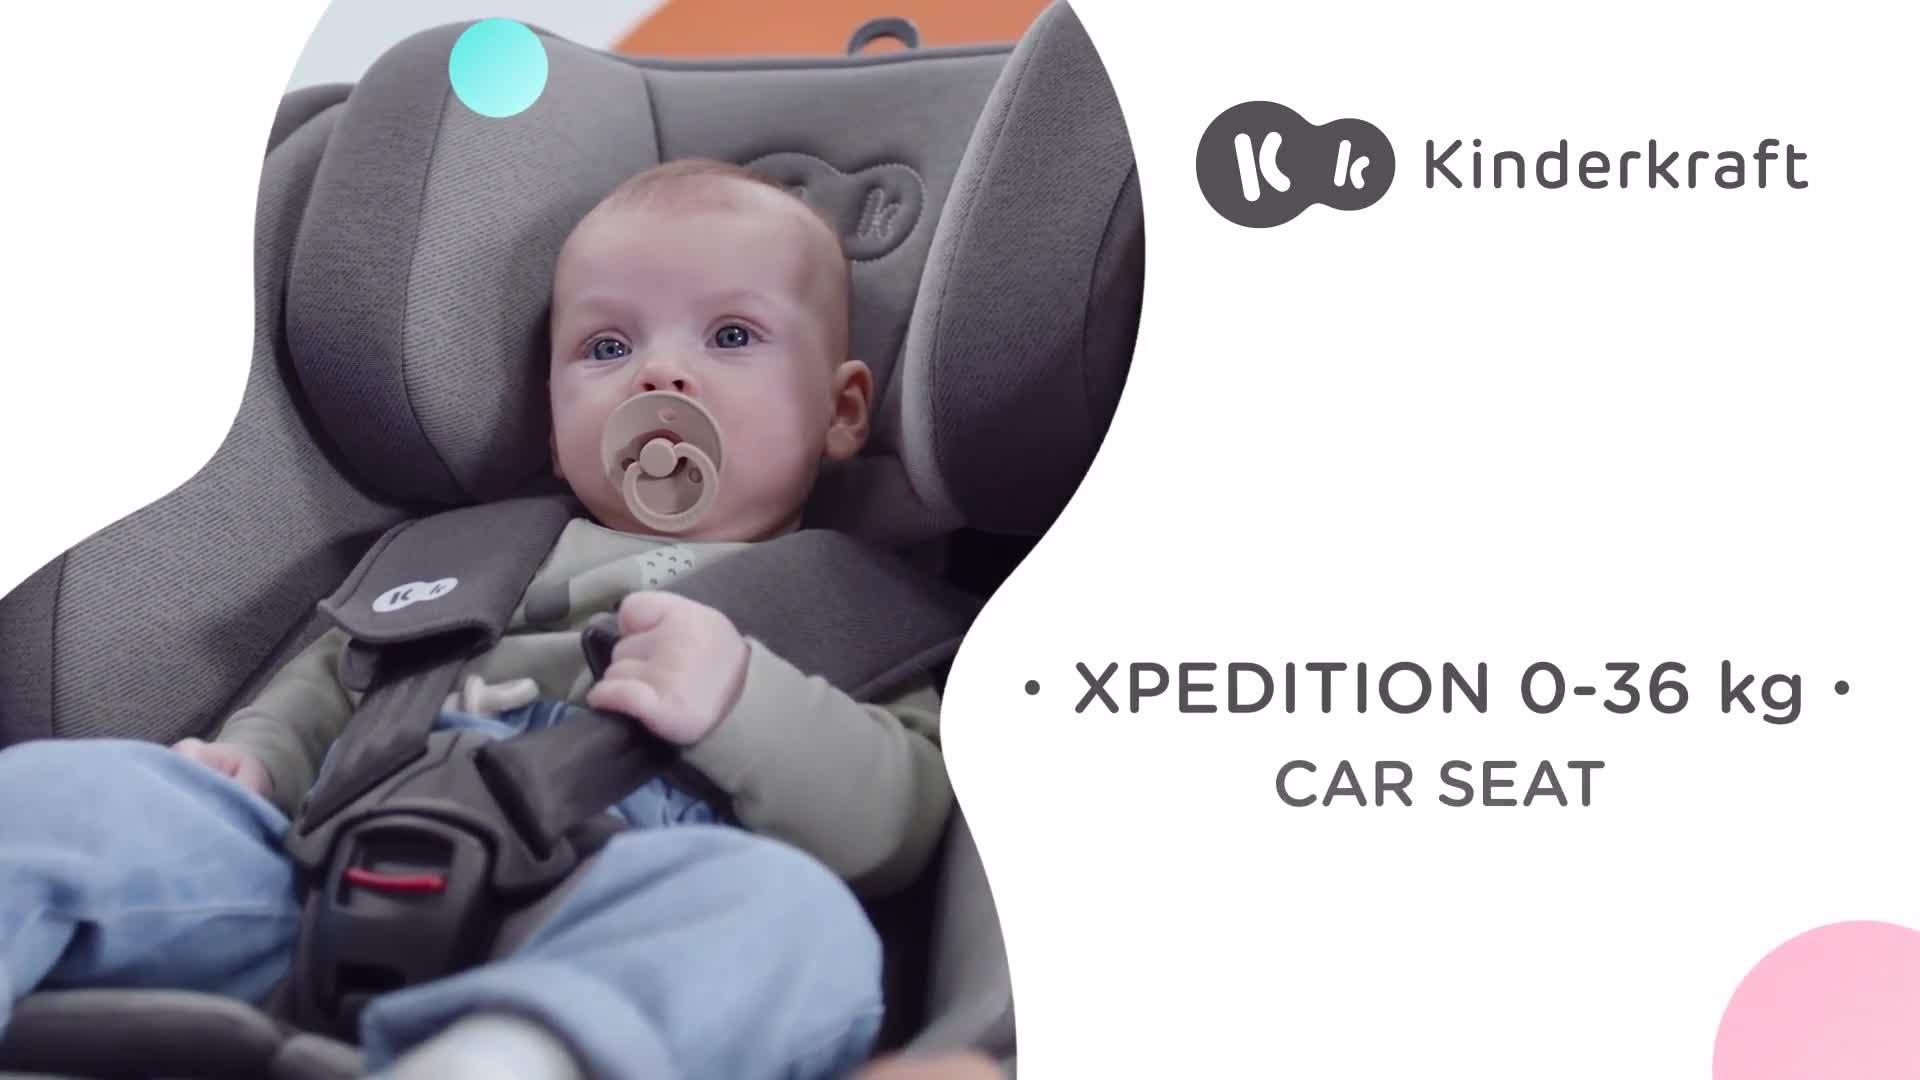 Kinderkraft Xpedition: Confort & Sécurité de 0 à 12 Ans (Test + Avis)